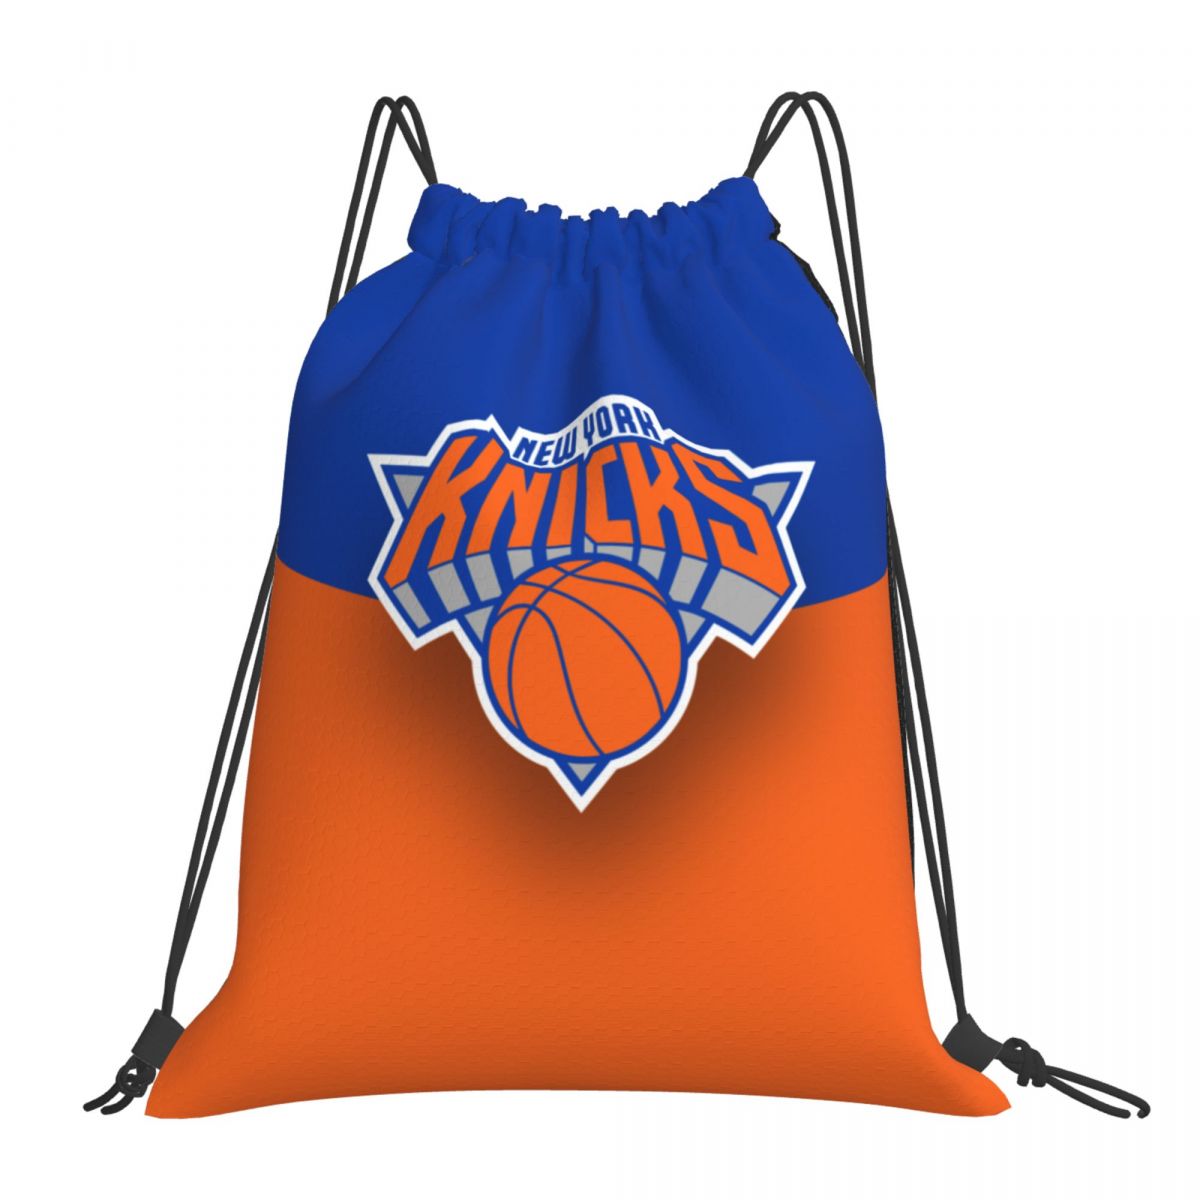 New York Knicks Art Unisex Drawstring Backpack Bag Travel Sackpack